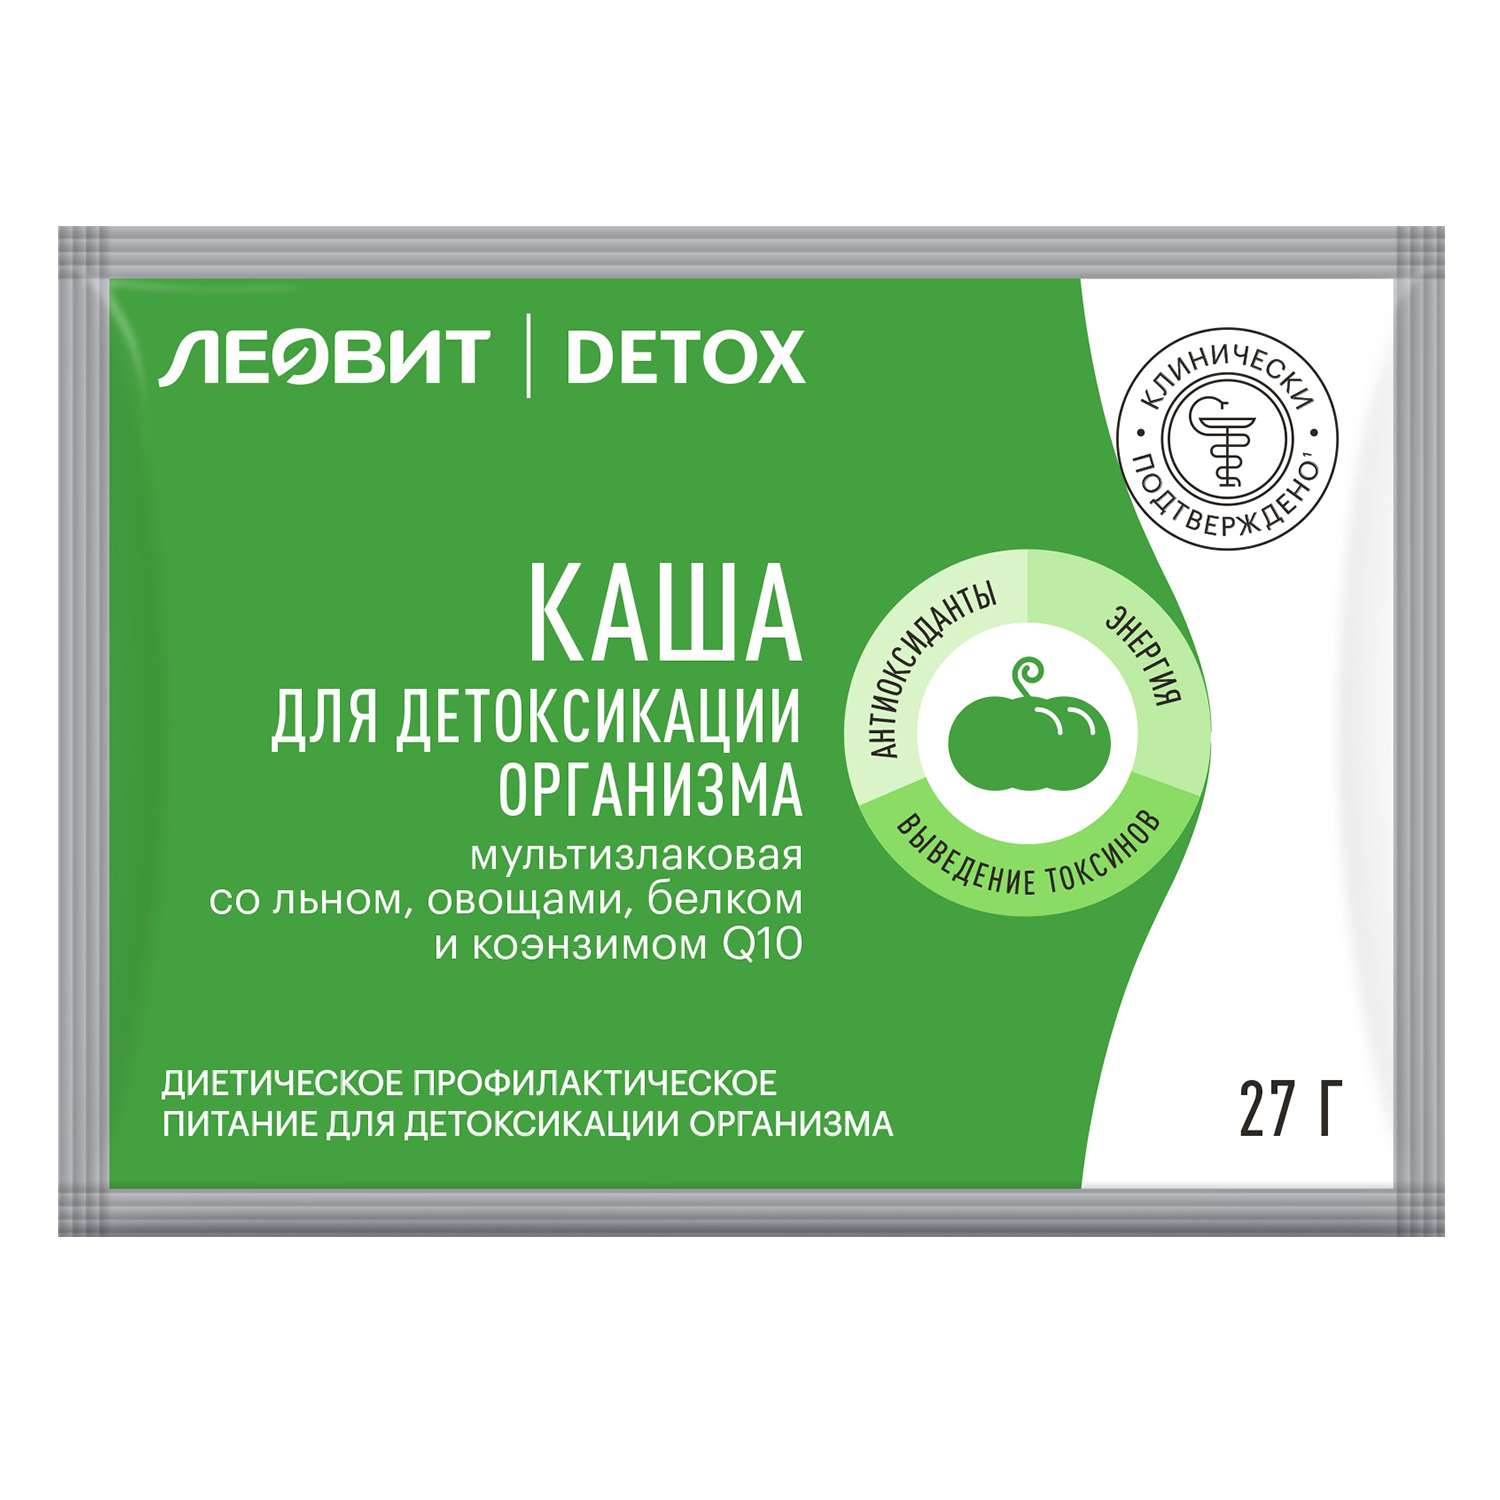 Каша Леовит Detox для детоксикации организма мультизлаковая со льном и овощами 27г - фото 1